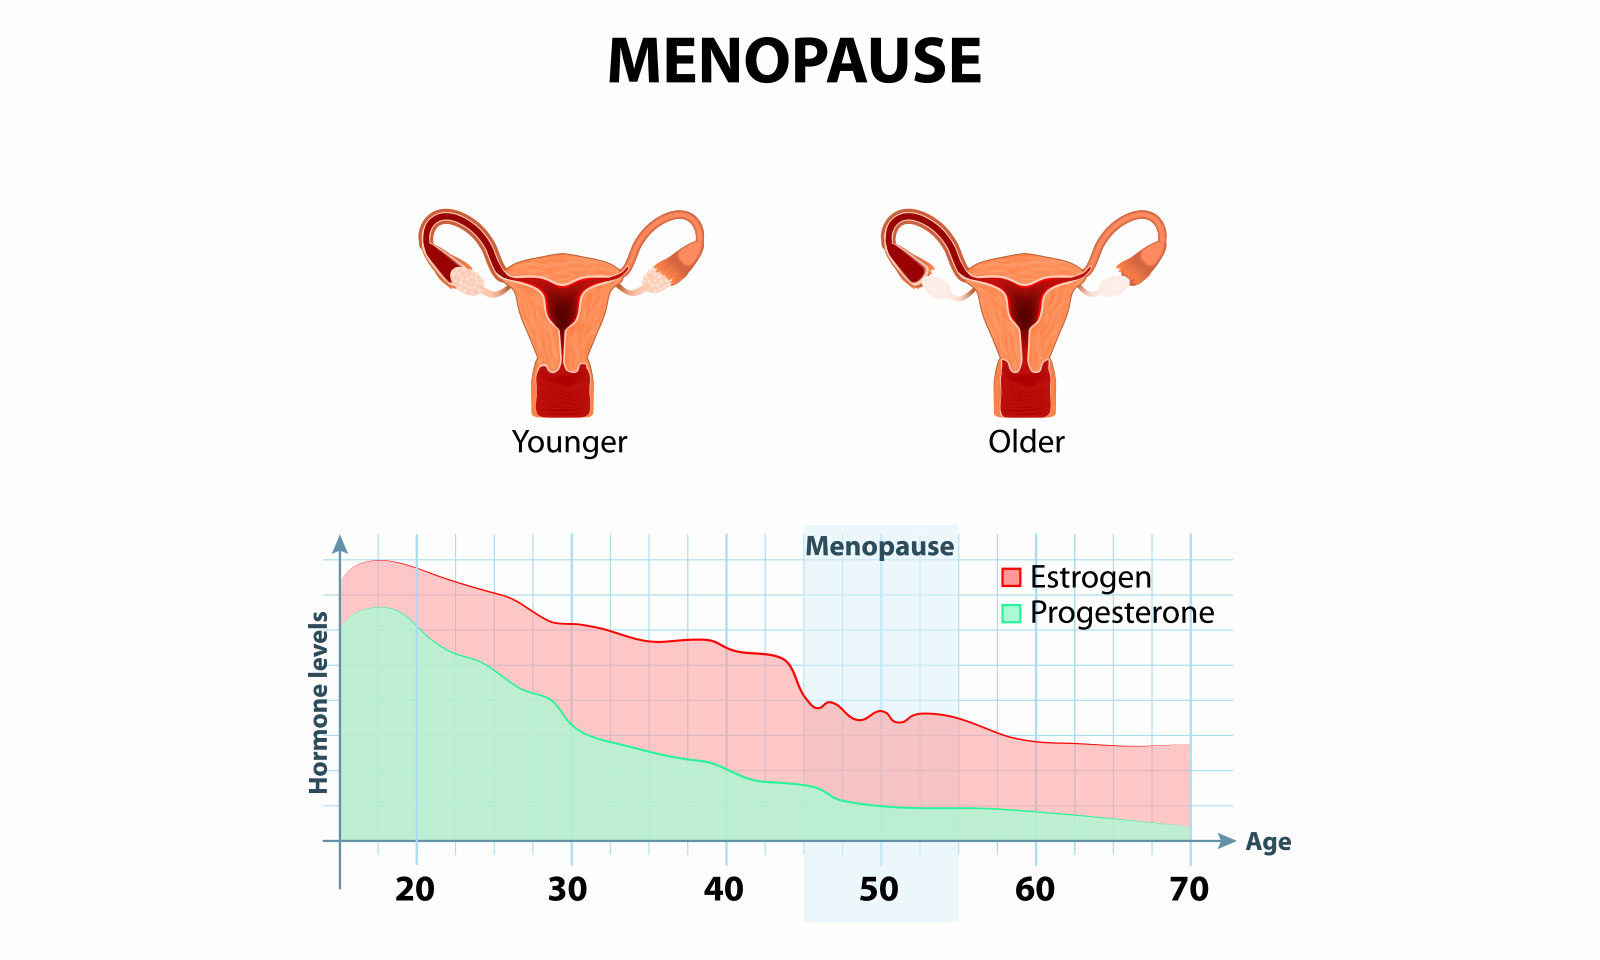 Менопауза 3 года. Климакс в среднем. Средний Возраст менопаузы. Средний Возраст климакса у женщин. Диаграмма менопаузы по возрасту.